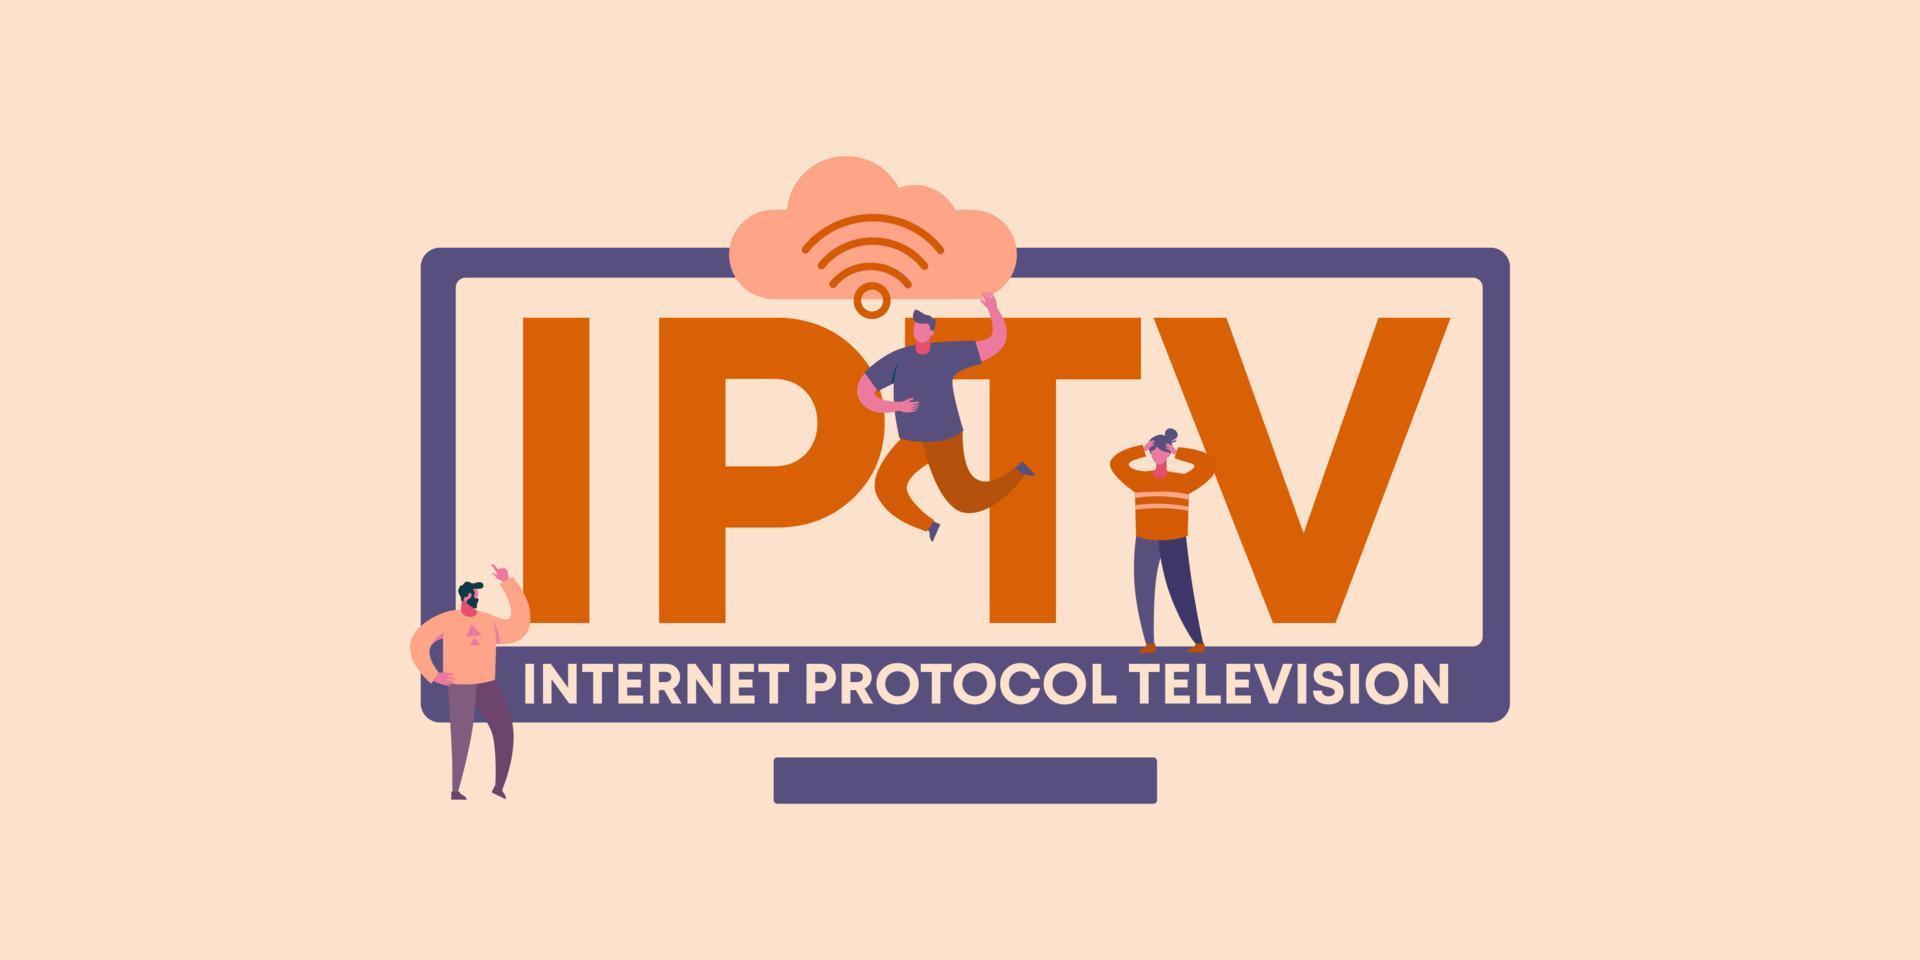 télévision sur protocole internet iptv. technologies mondiales de codage de l'information sur les médias et logiciels Web. vecteur